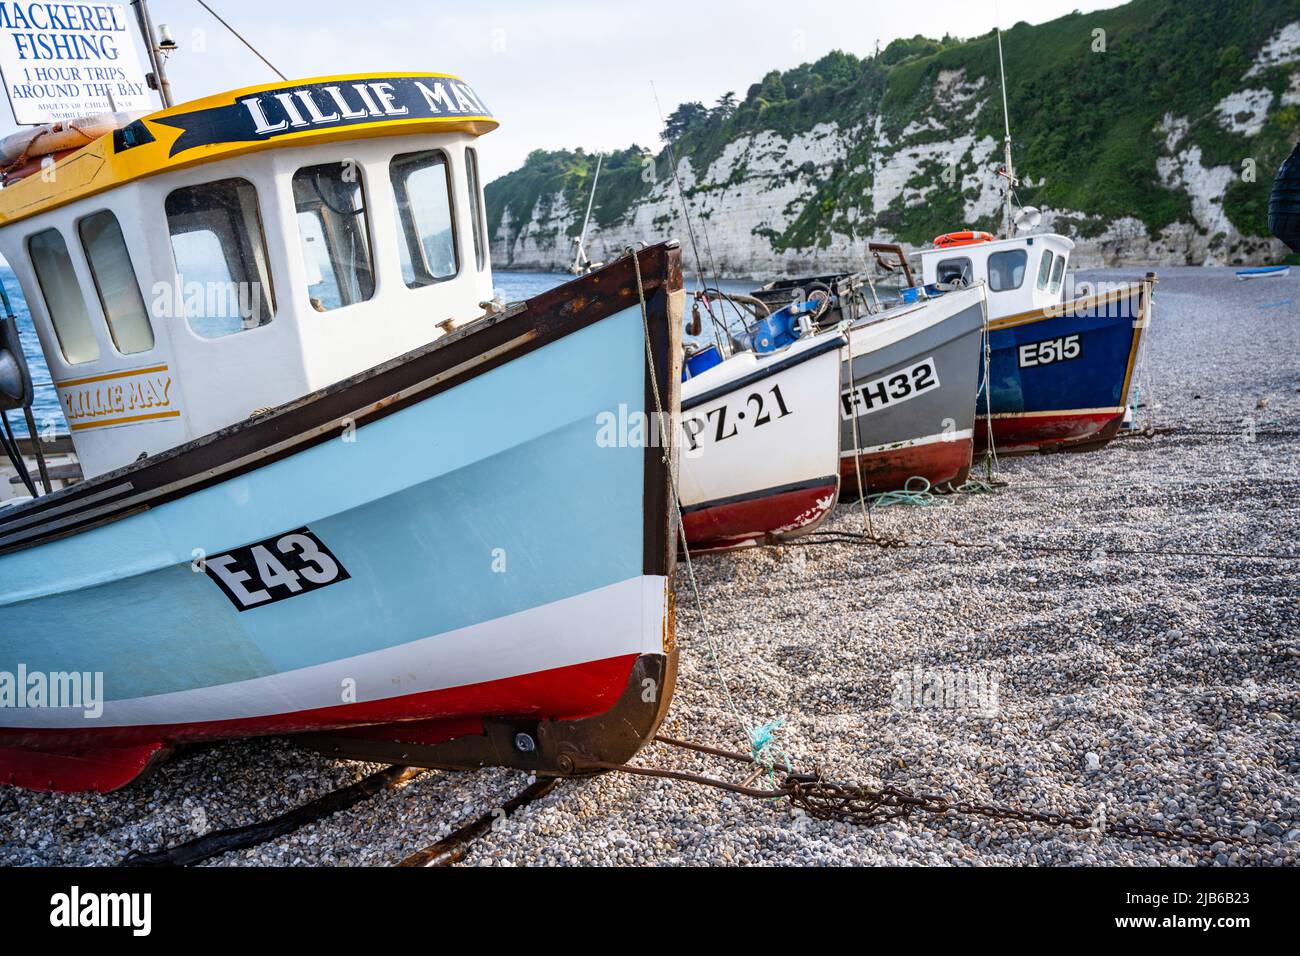 Barche da pesca trasportate sulla spiaggia a Beer, Devon, Regno Unito Foto Stock